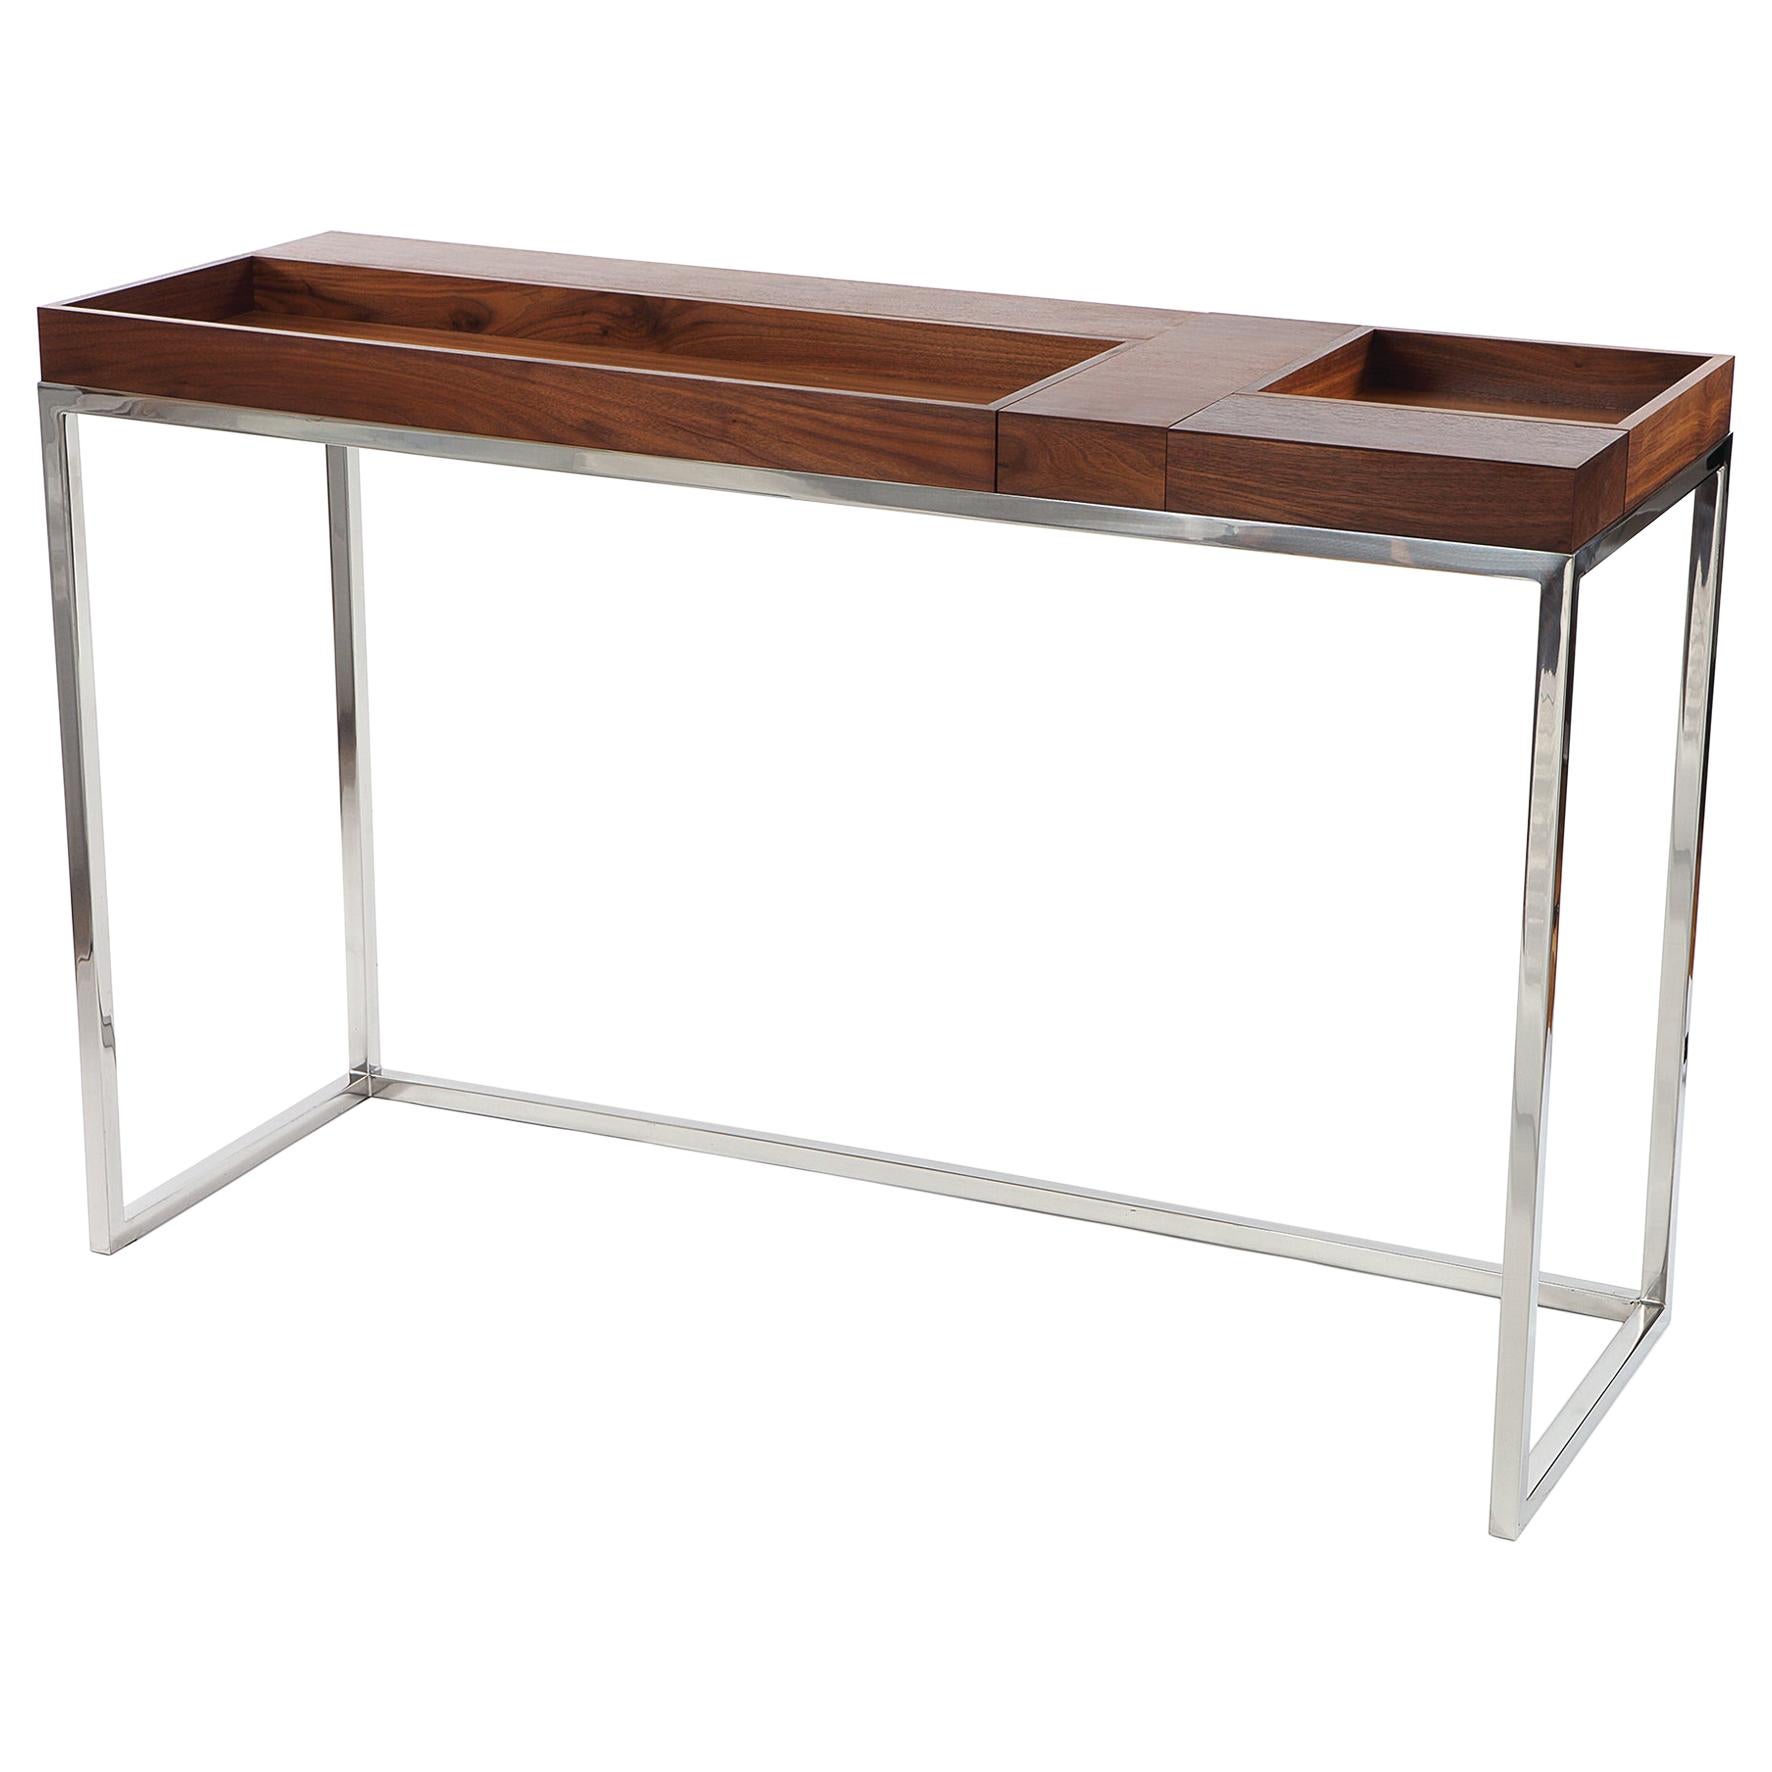 Table console moderne avec 5 plateaux réversibles en noyer et cadre en acier inoxydable poli